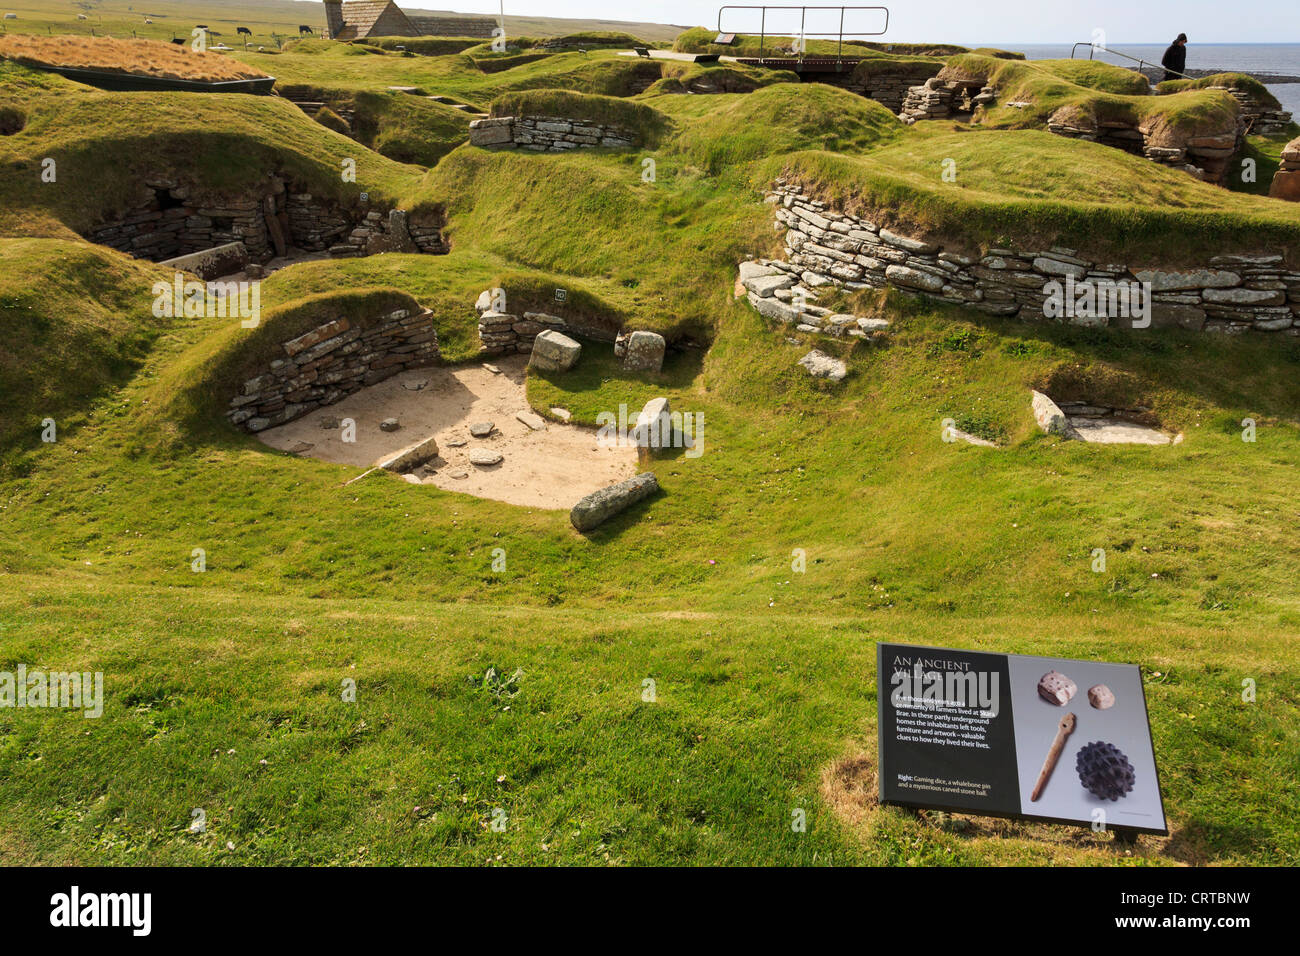 Les excavations d'anciennes maisons de village néolithique préhistorique à Skara Brae avec signal d'information. Orkney Islands Scotland UK Banque D'Images